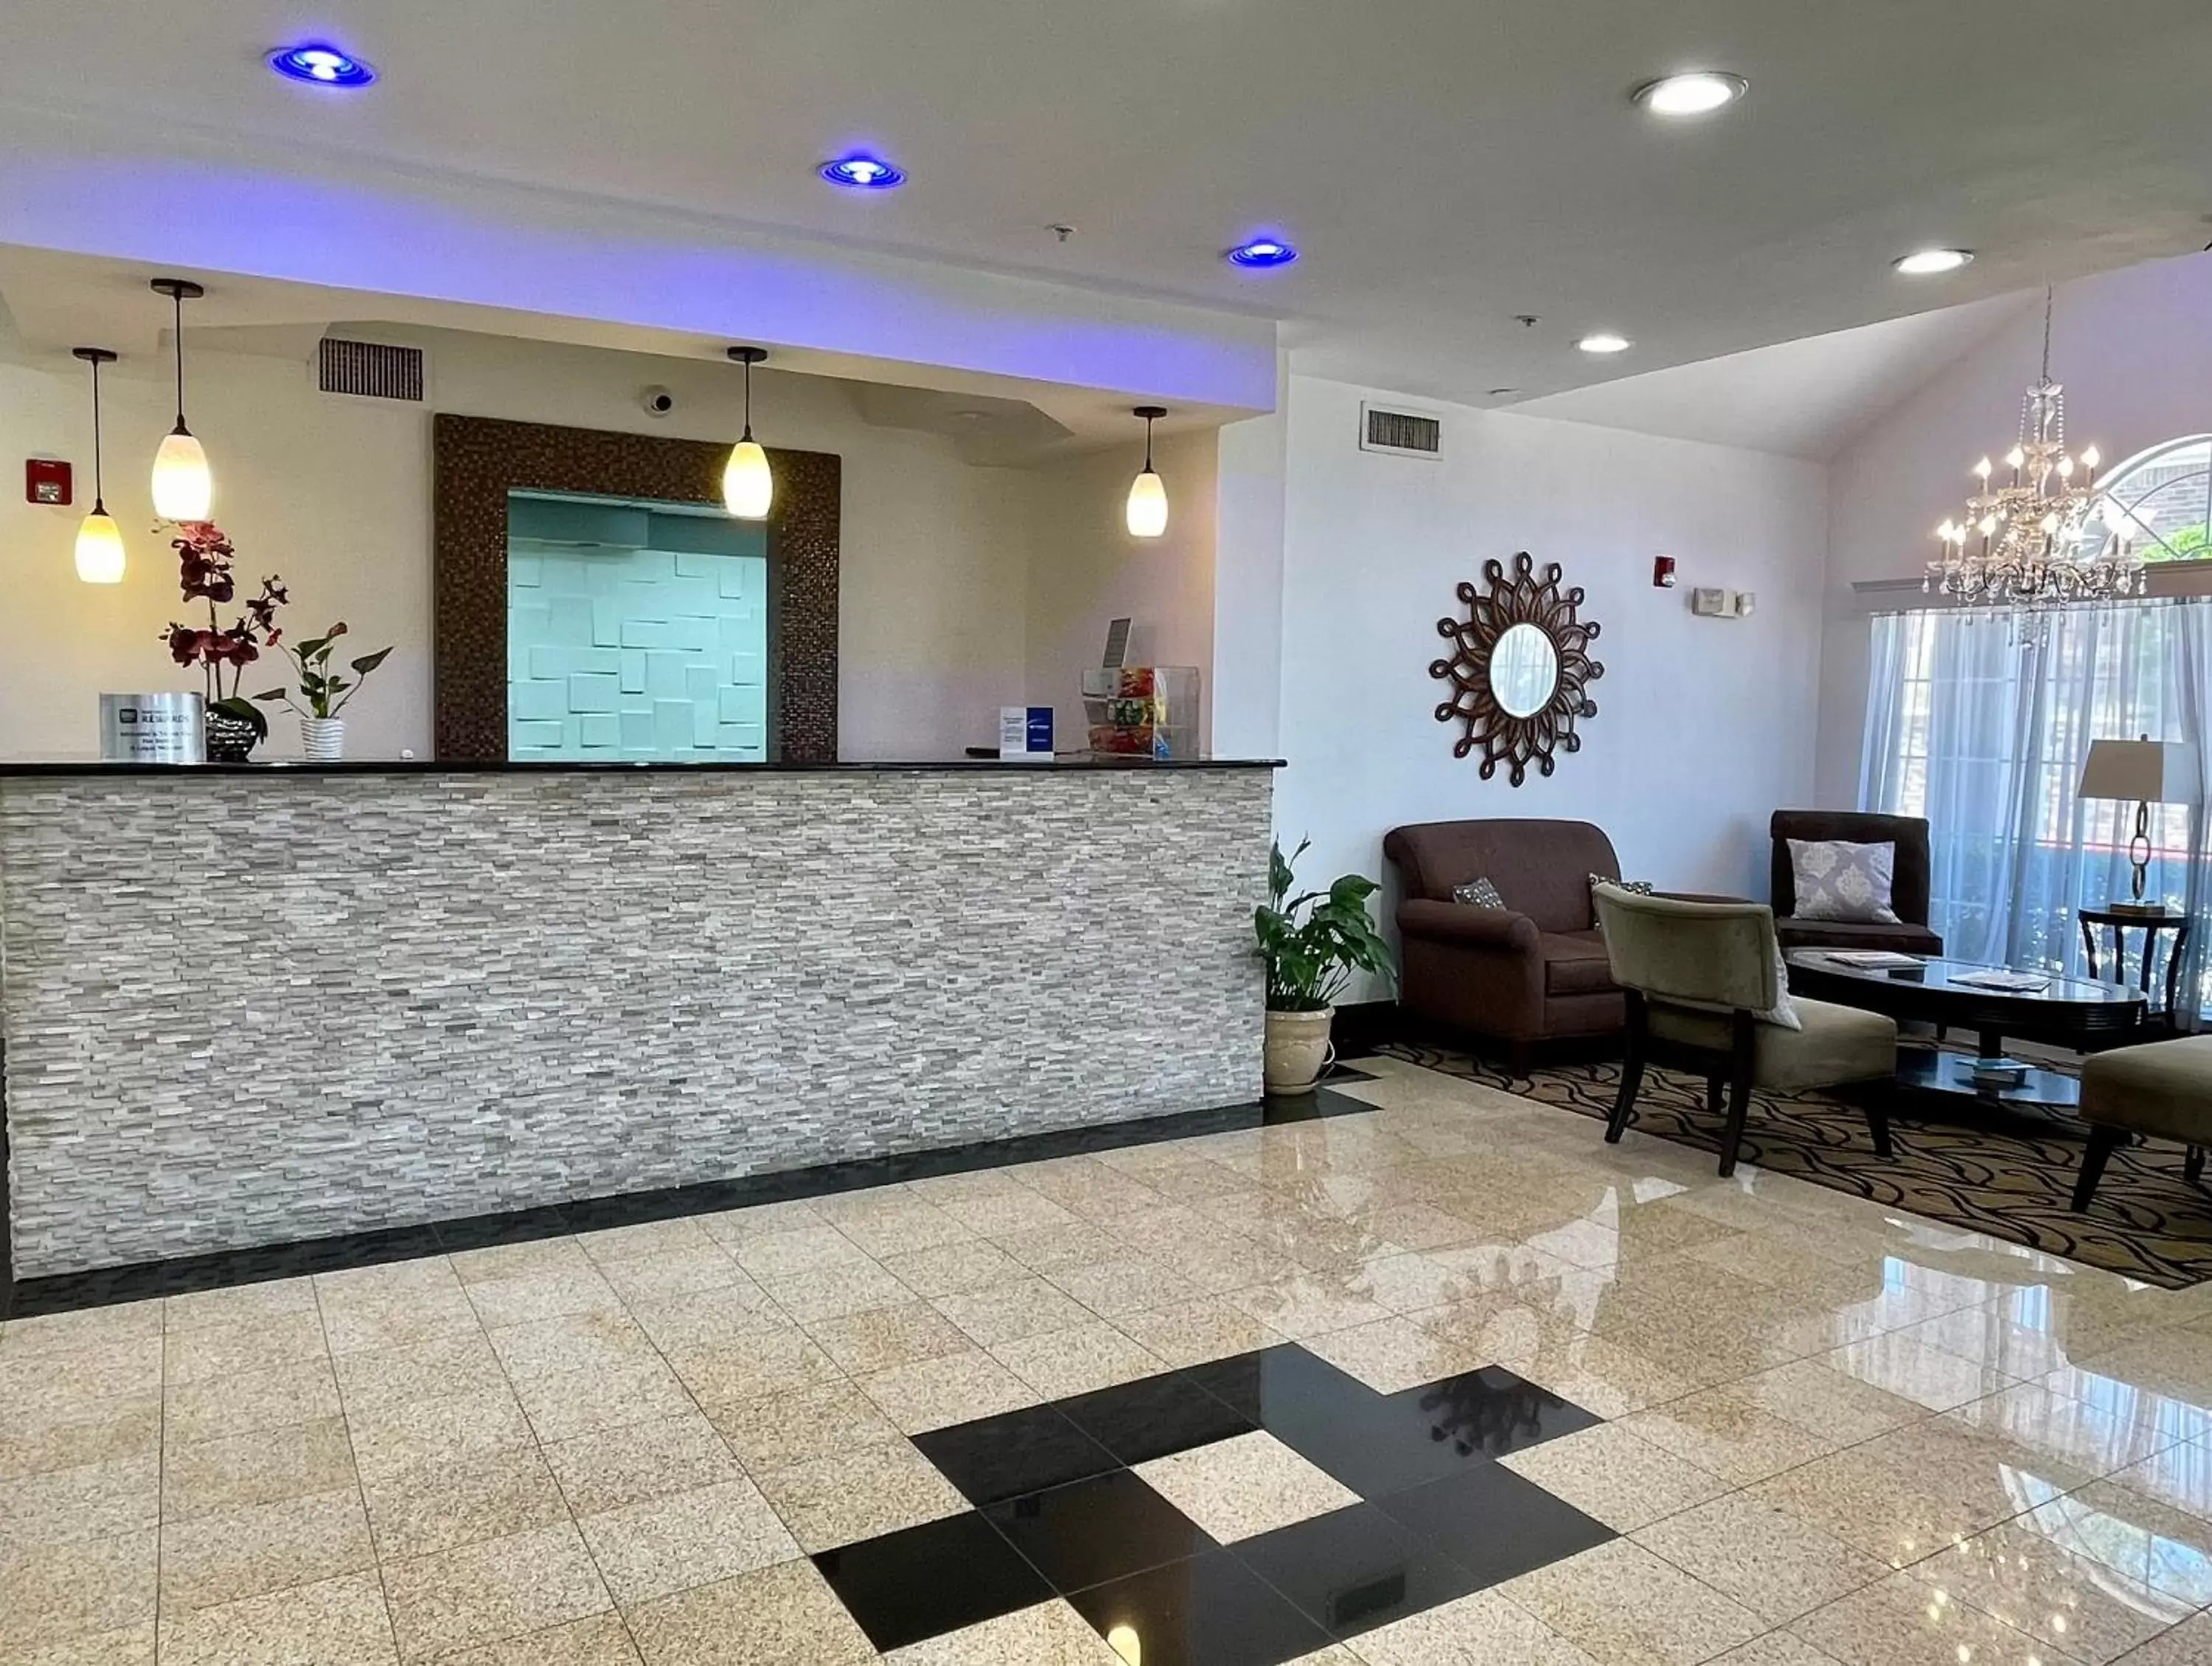 Lobby or reception, Lobby/Reception in Best Western Roanoke Inn & Suites